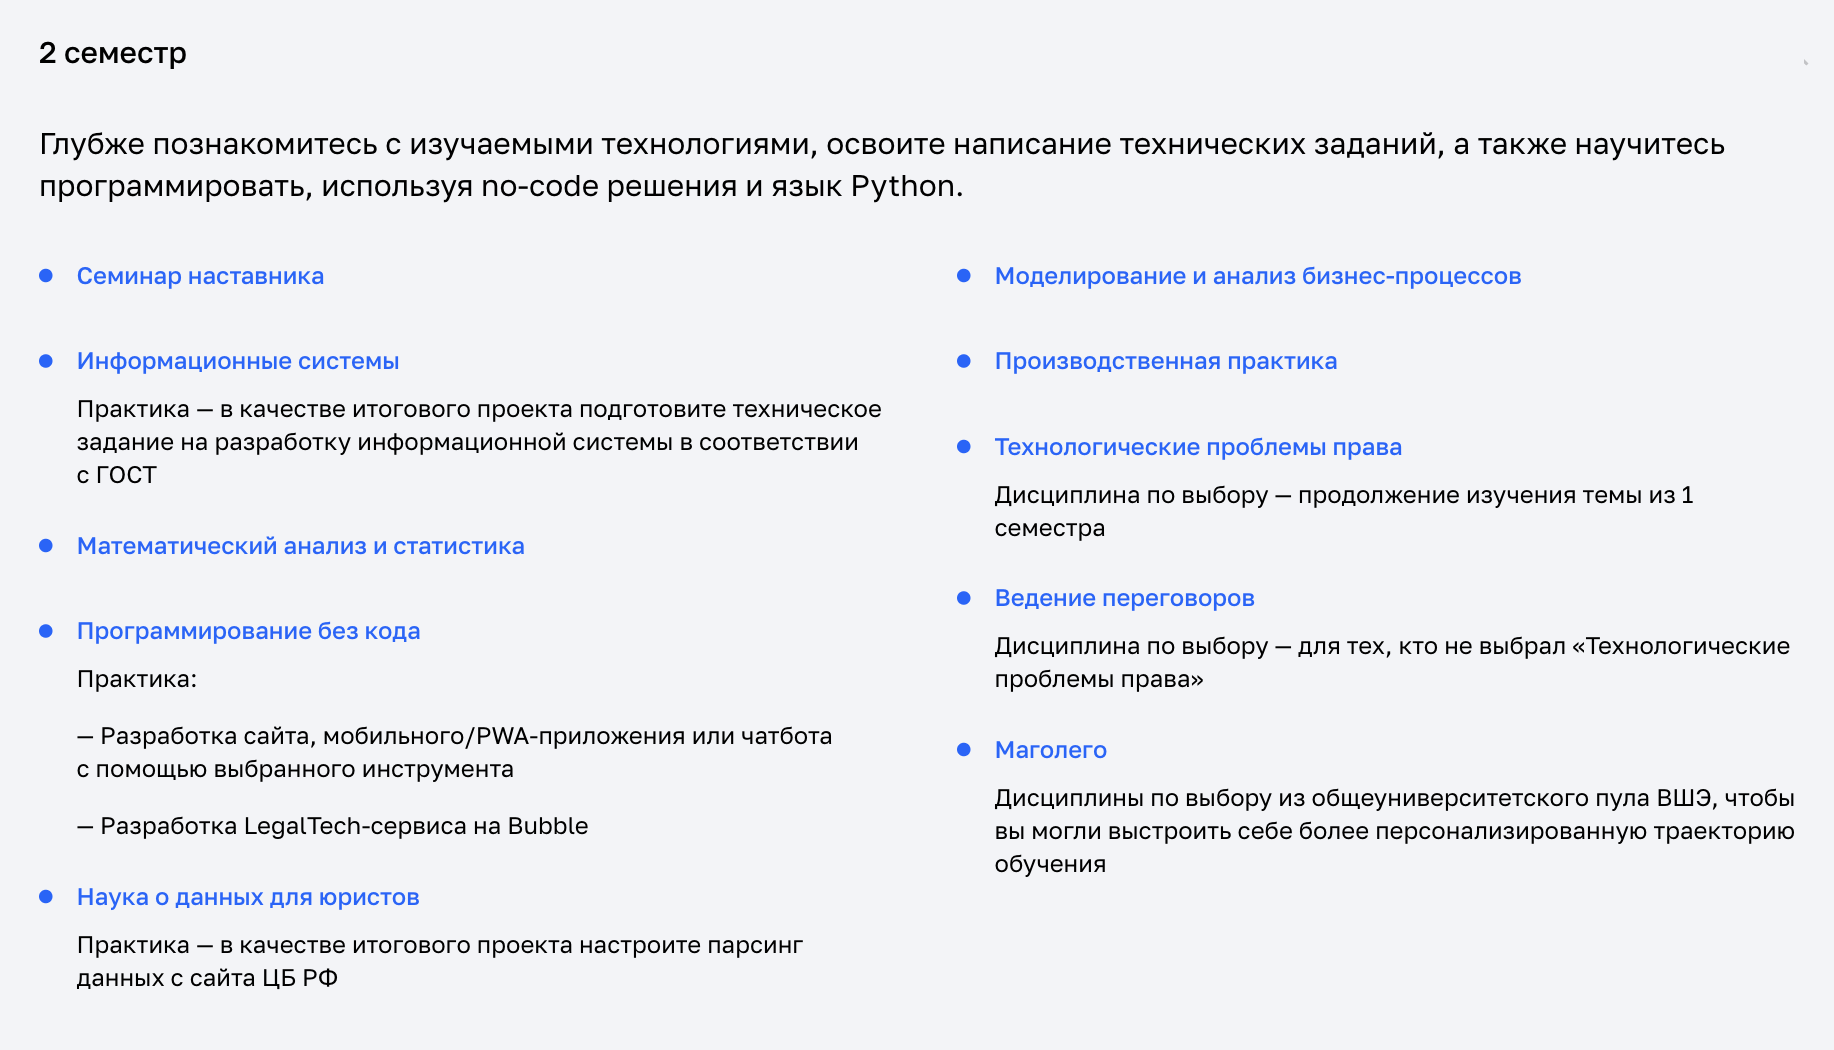 Так выглядит программа второго семестра магистерской программы «Автоматизация юридических процессов». Источник: netology.ru